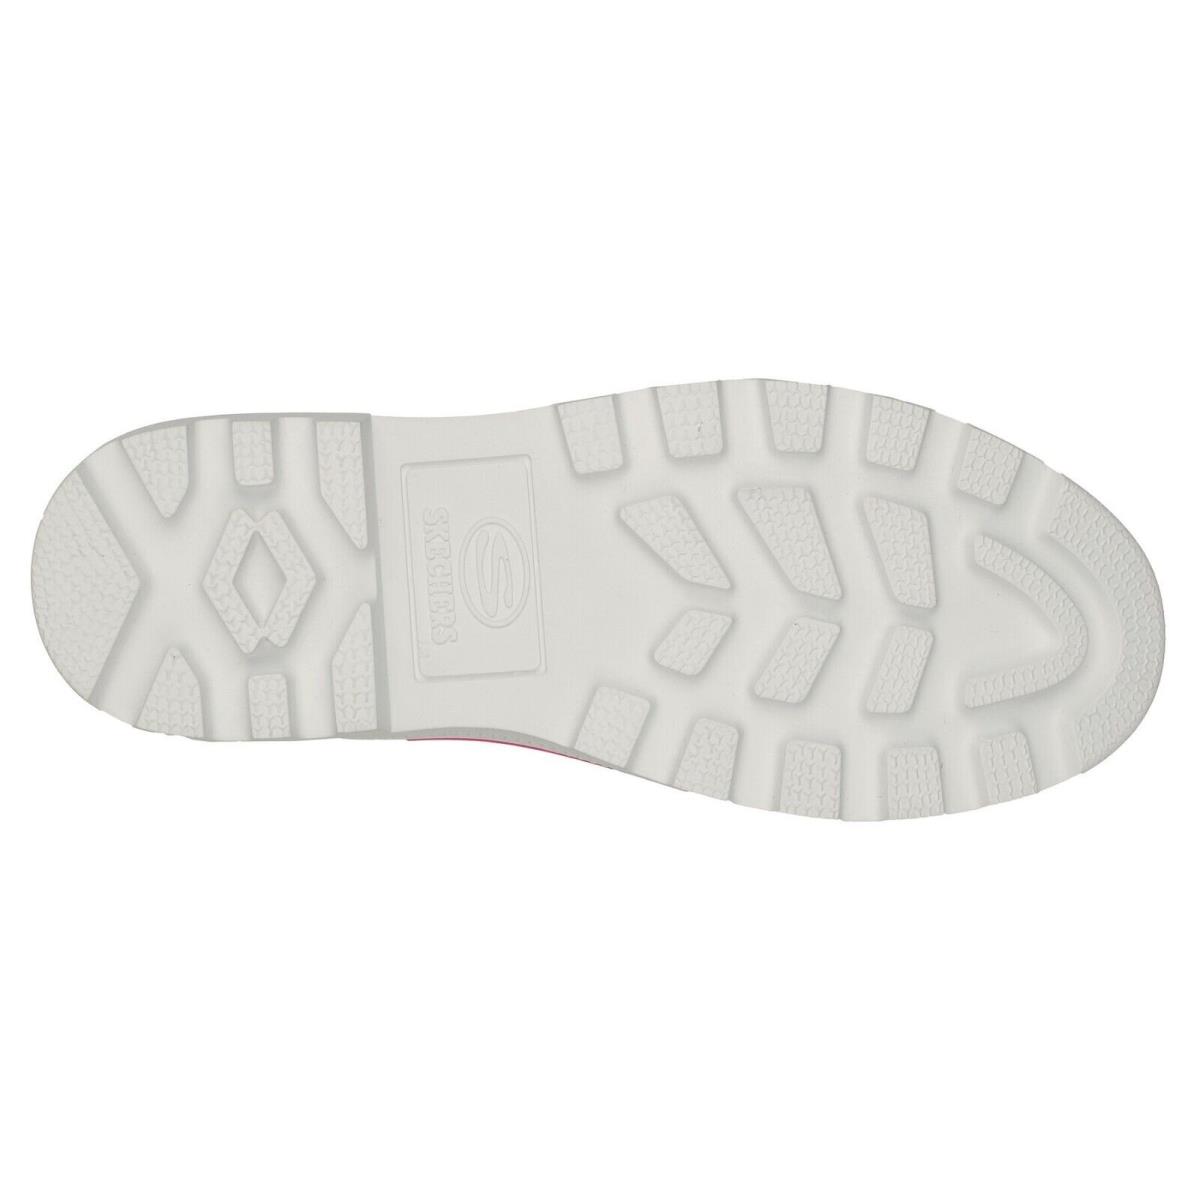 Skechers shoes Roadies - Hot Pink 2